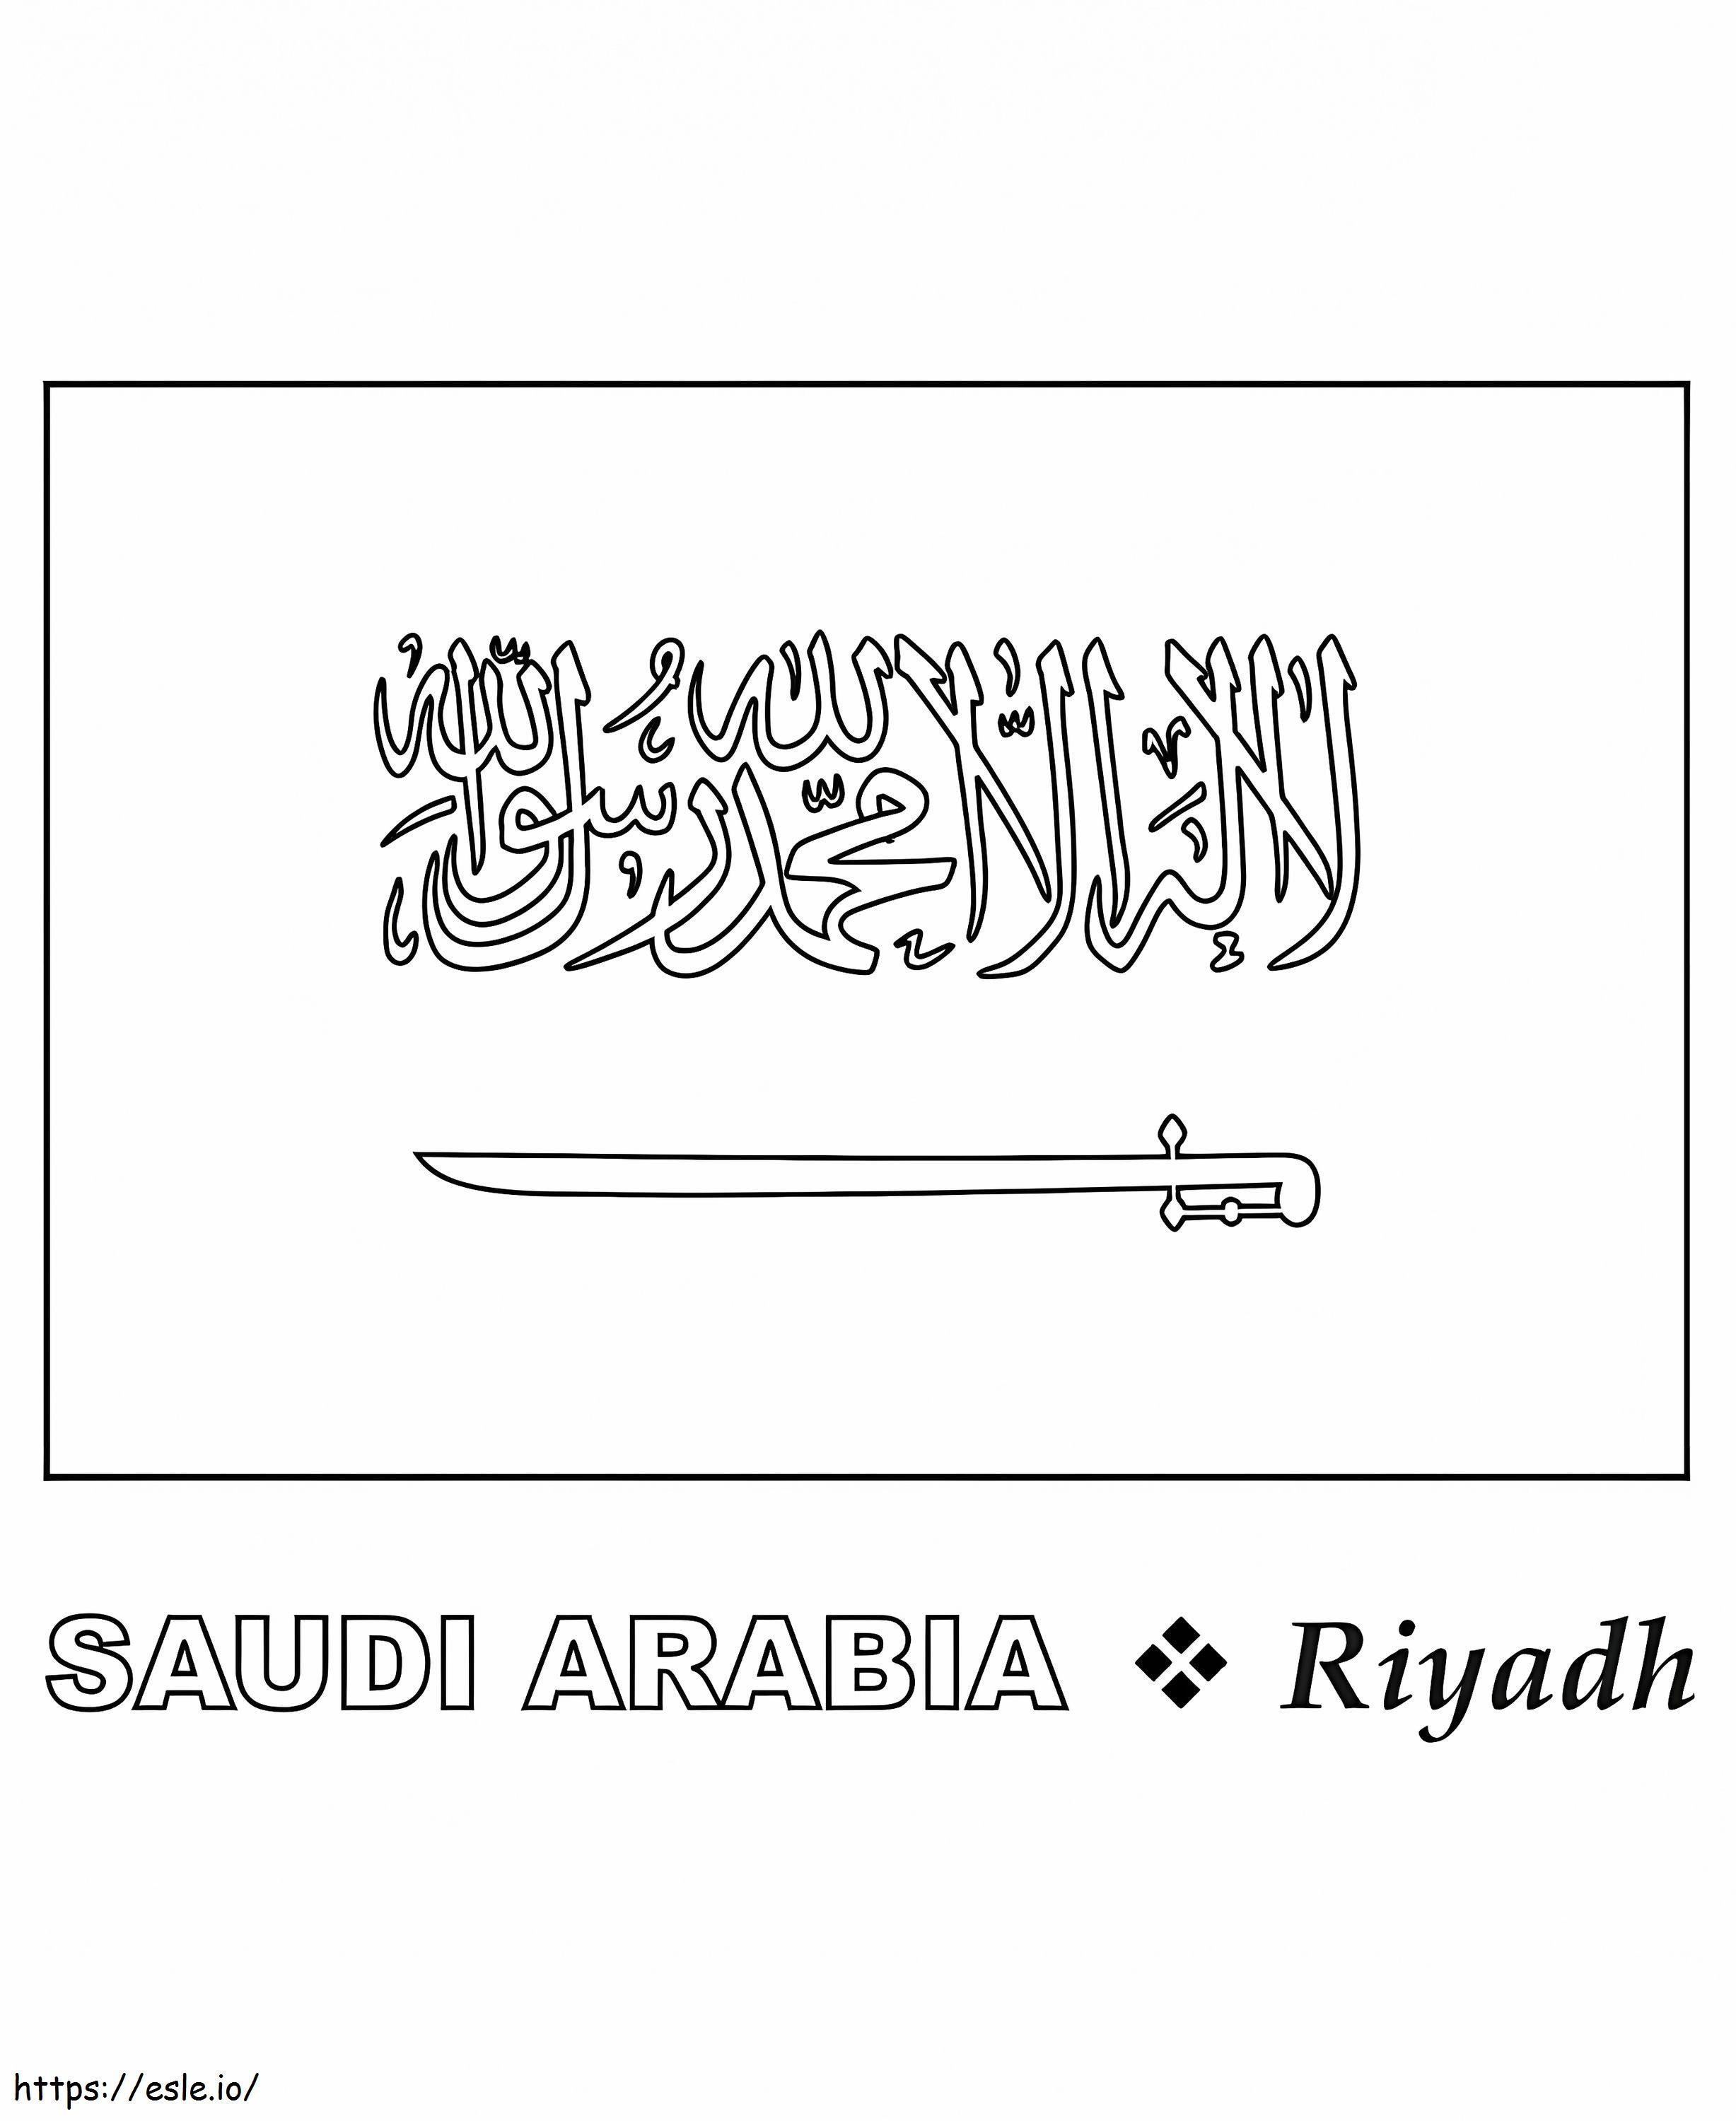 Flaga Arabii Saudyjskiej 2 kolorowanka